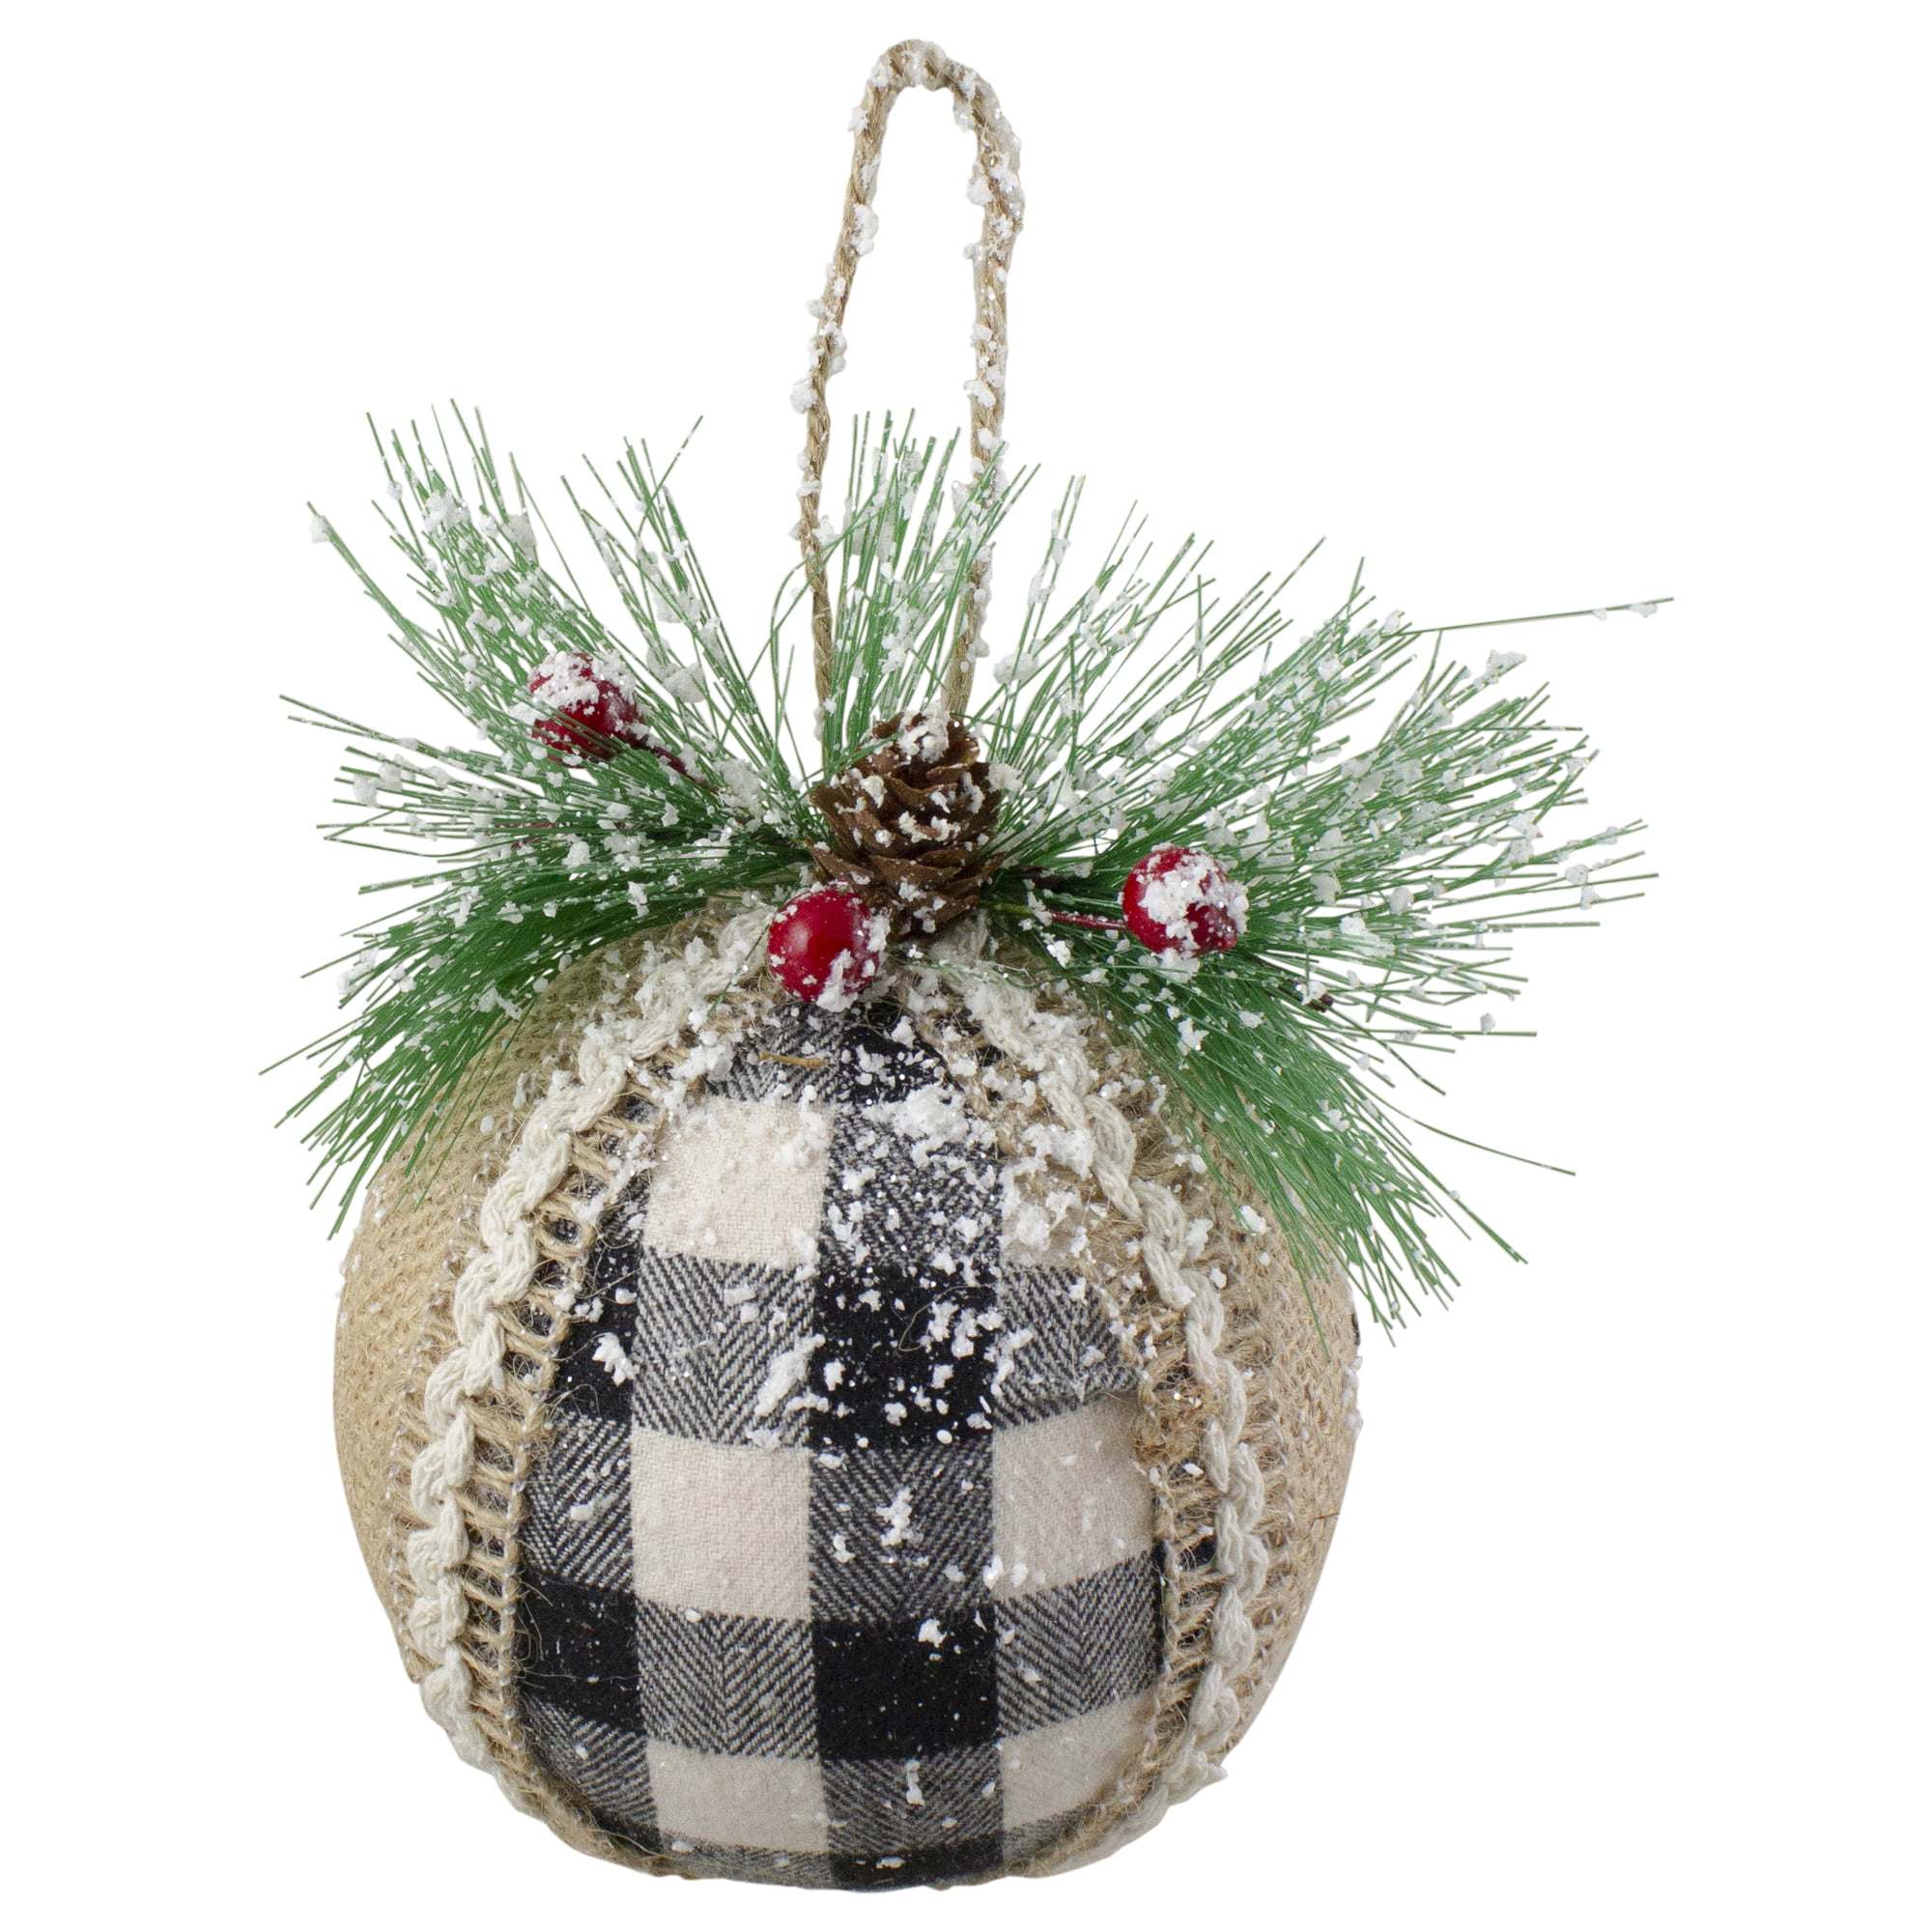 plaid christmas ball ornaments